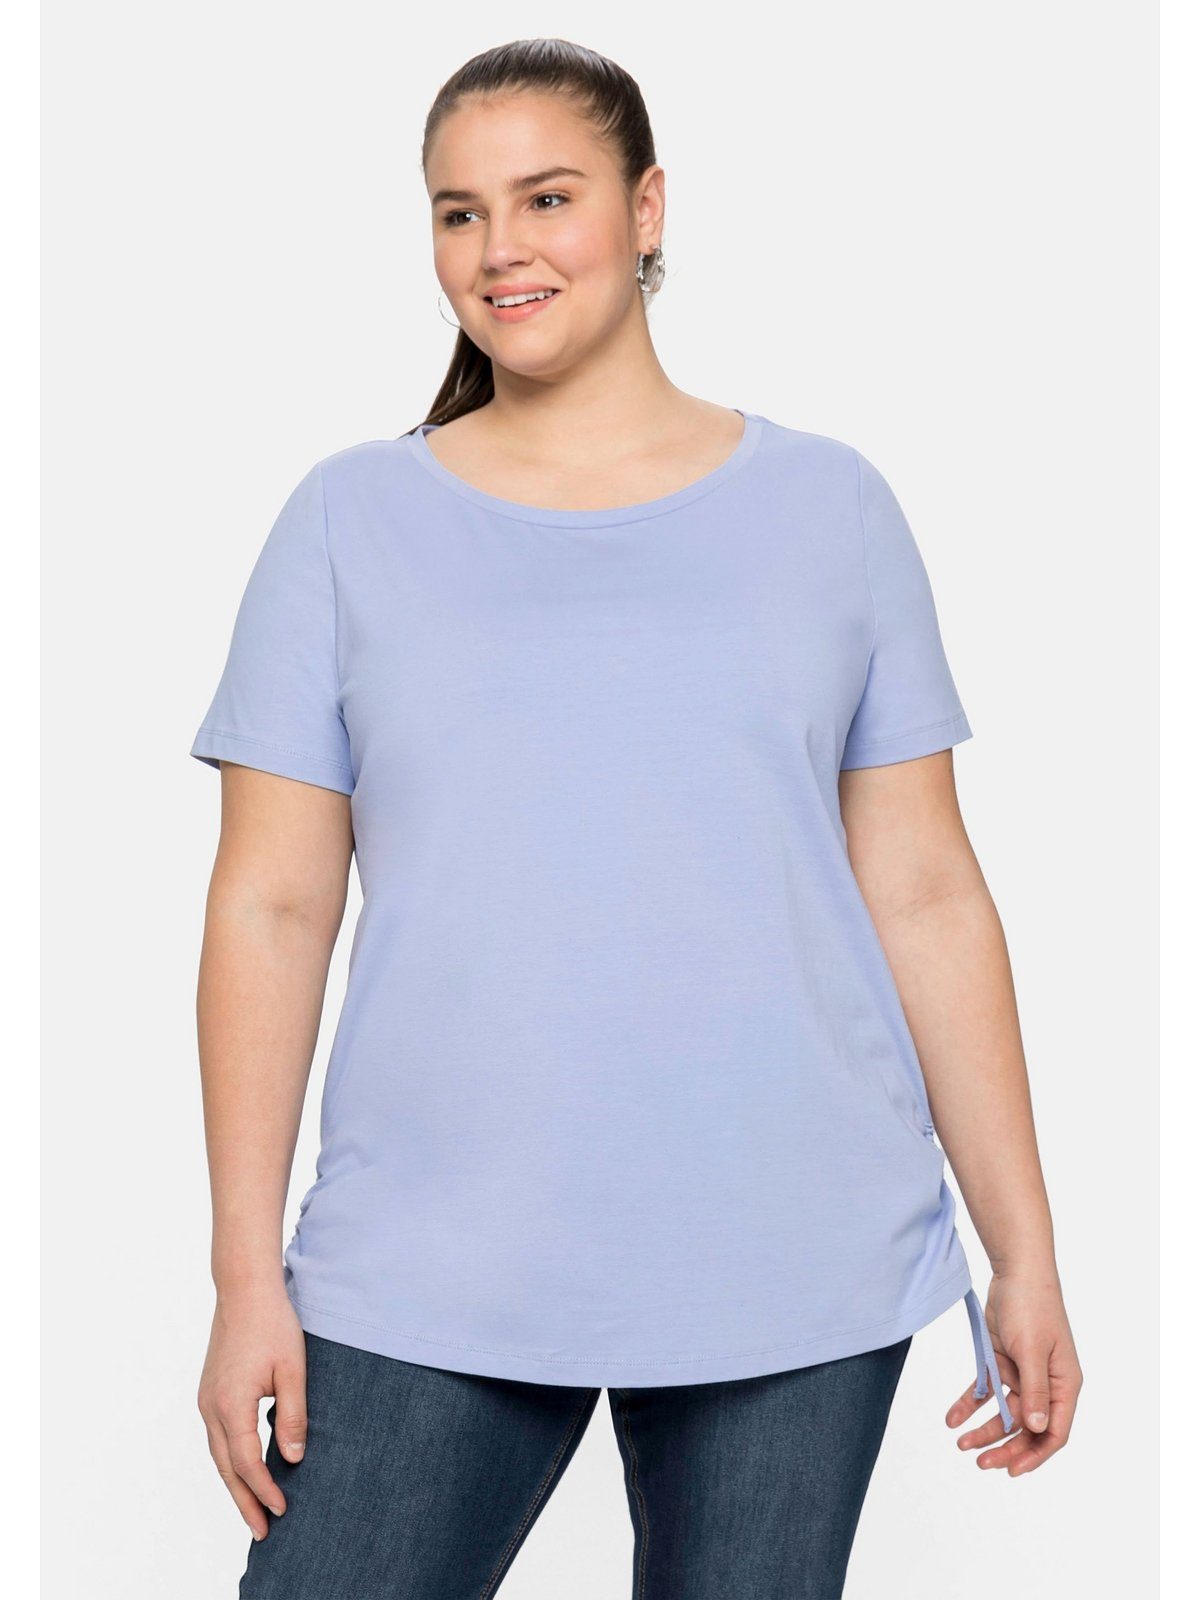 Sheego T-Shirt Große Größen seitlicher und mit mittelblau Bindeband Raffung